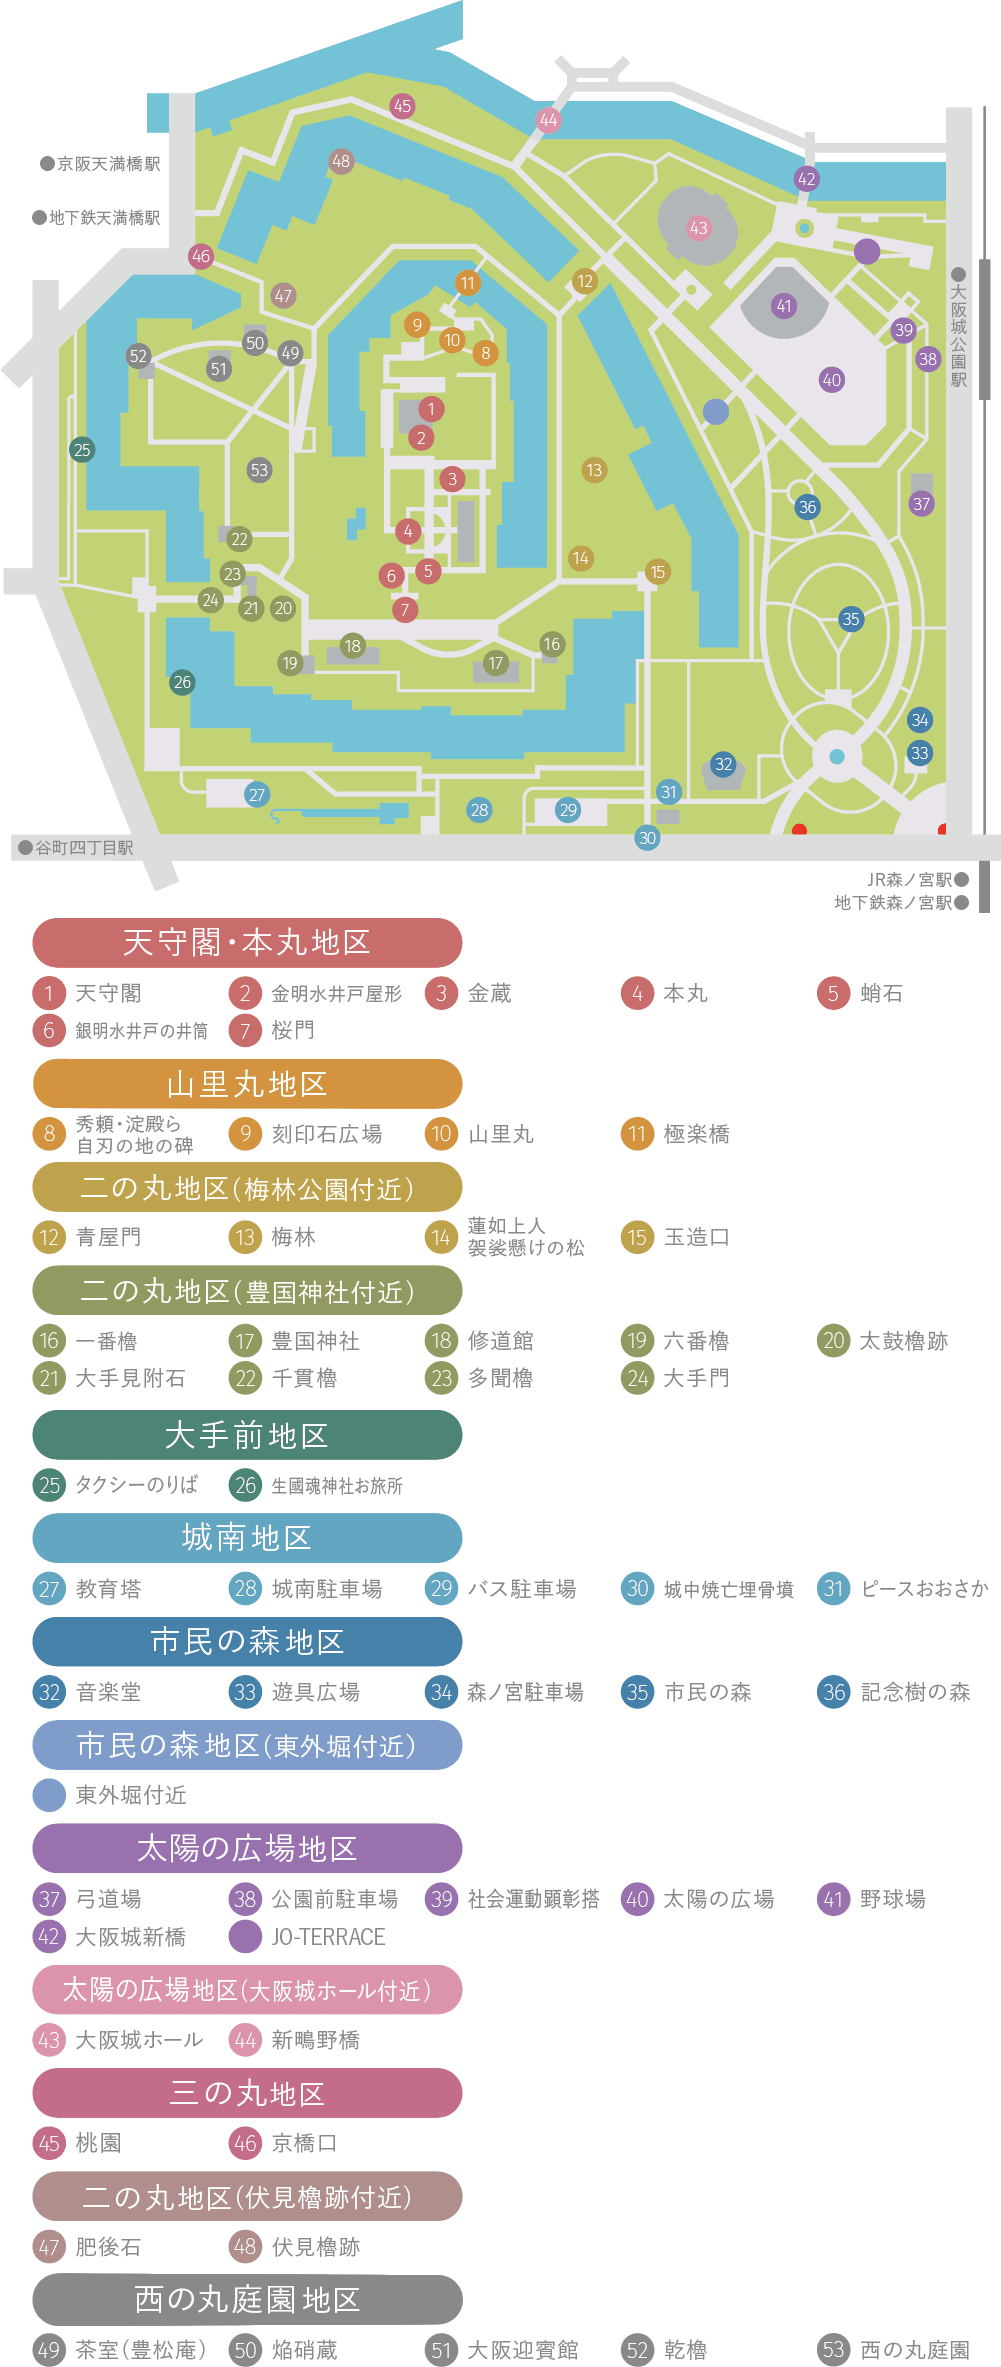 大阪城 大阪城公園地図